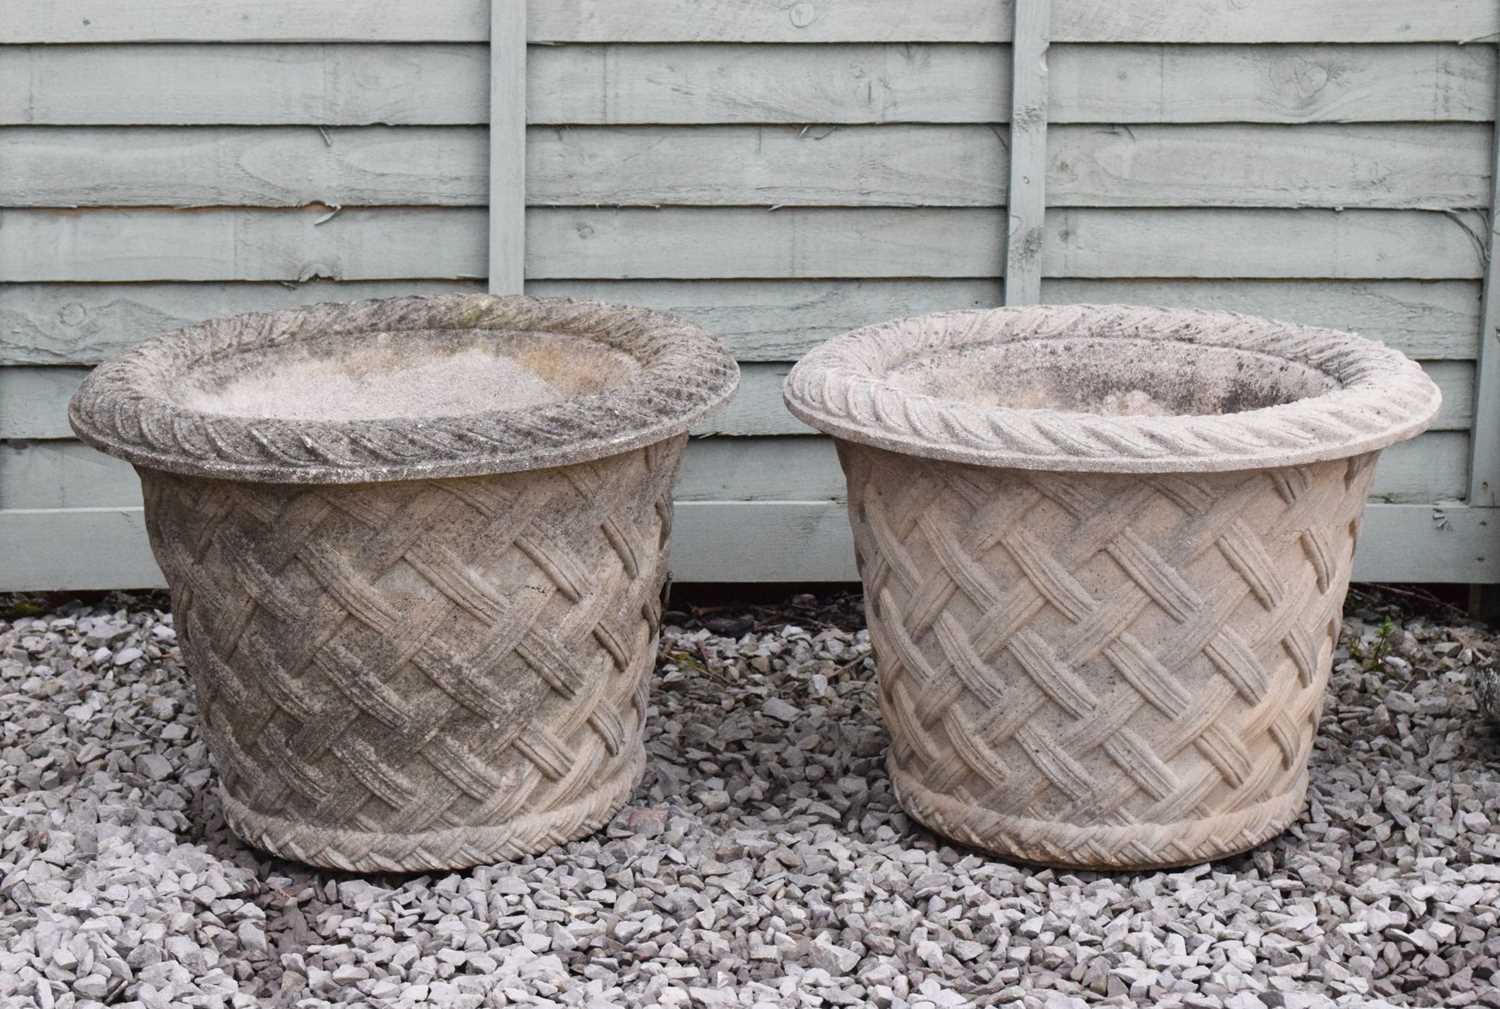 Pair of basket design garden urns